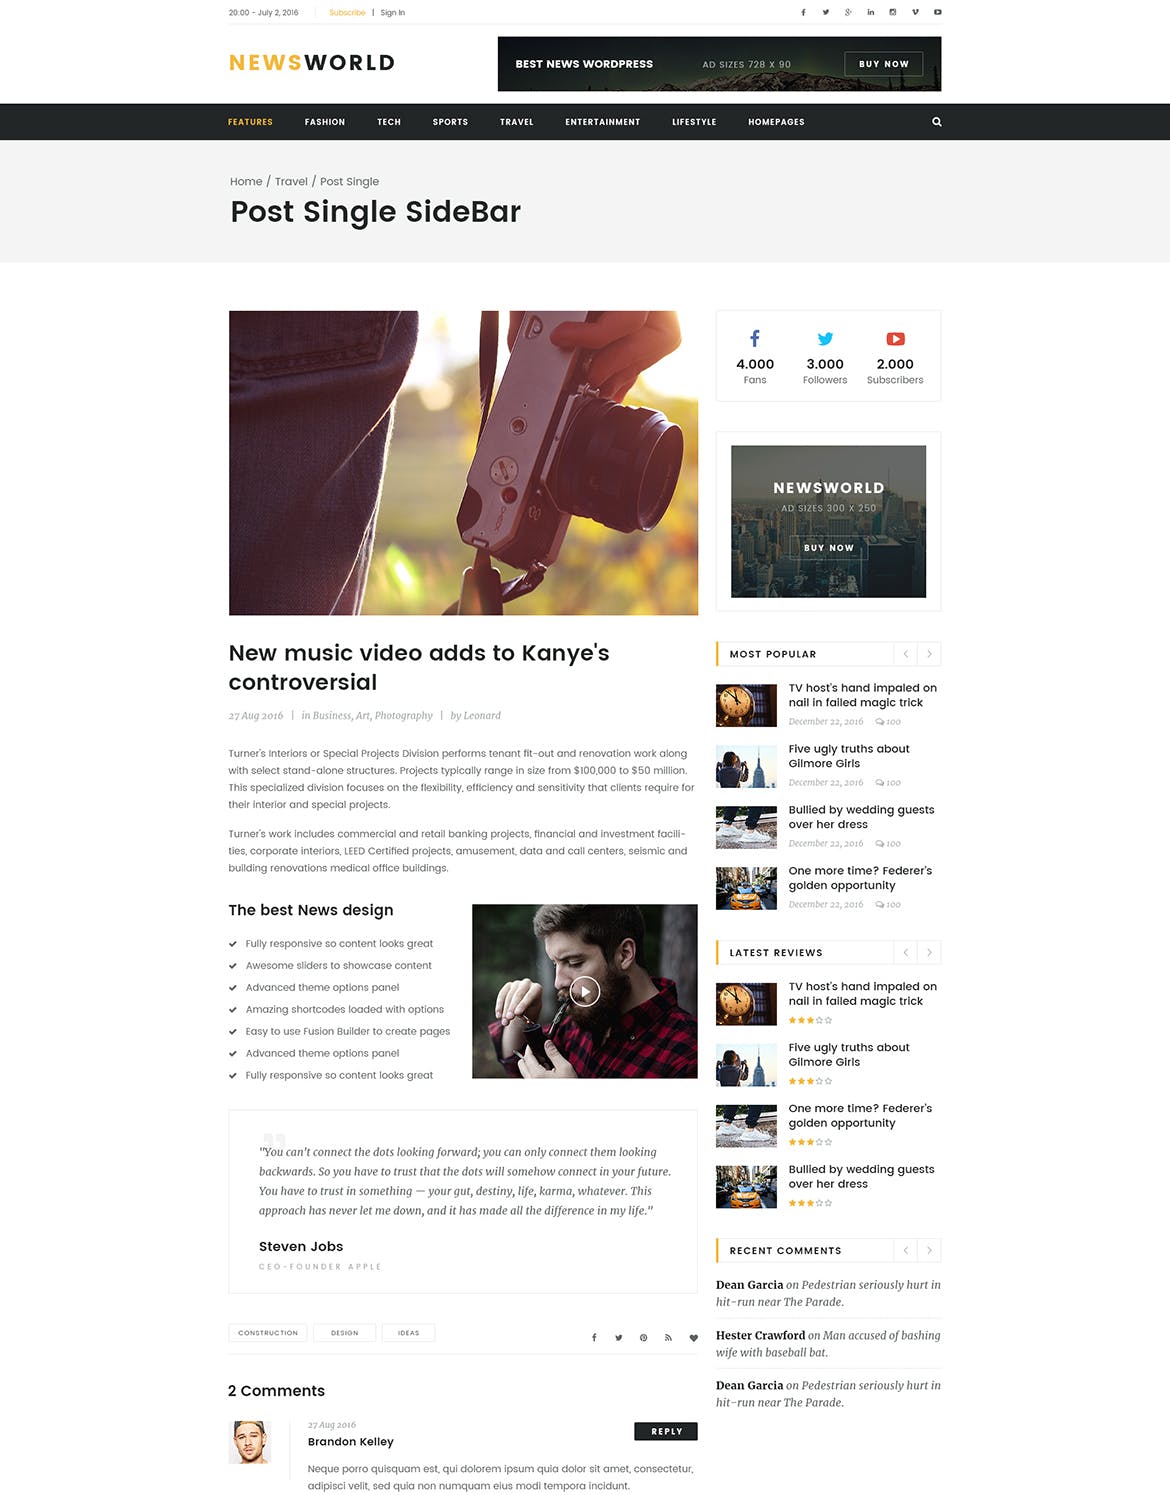 新闻资讯杂志类网站设计HTML模板蚂蚁素材精选 Newsworld | Mutil-Concept Magazine HTML5 Template插图(12)